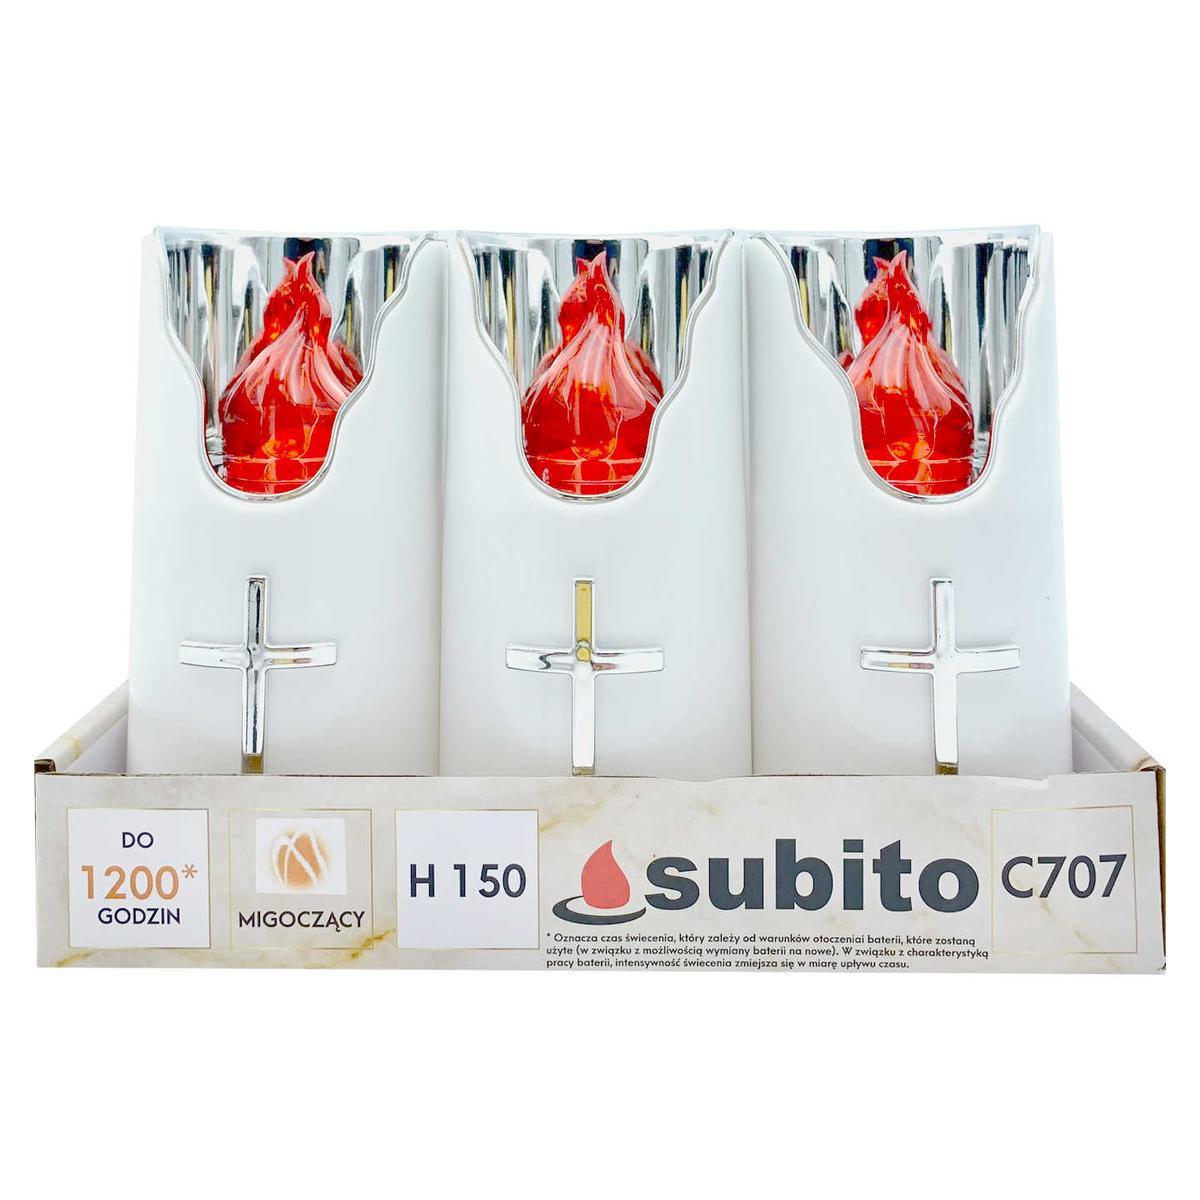 Wkłady do zniczy LED Subito C707 H150 6 sztuk srebrno-czerwony nr. 1